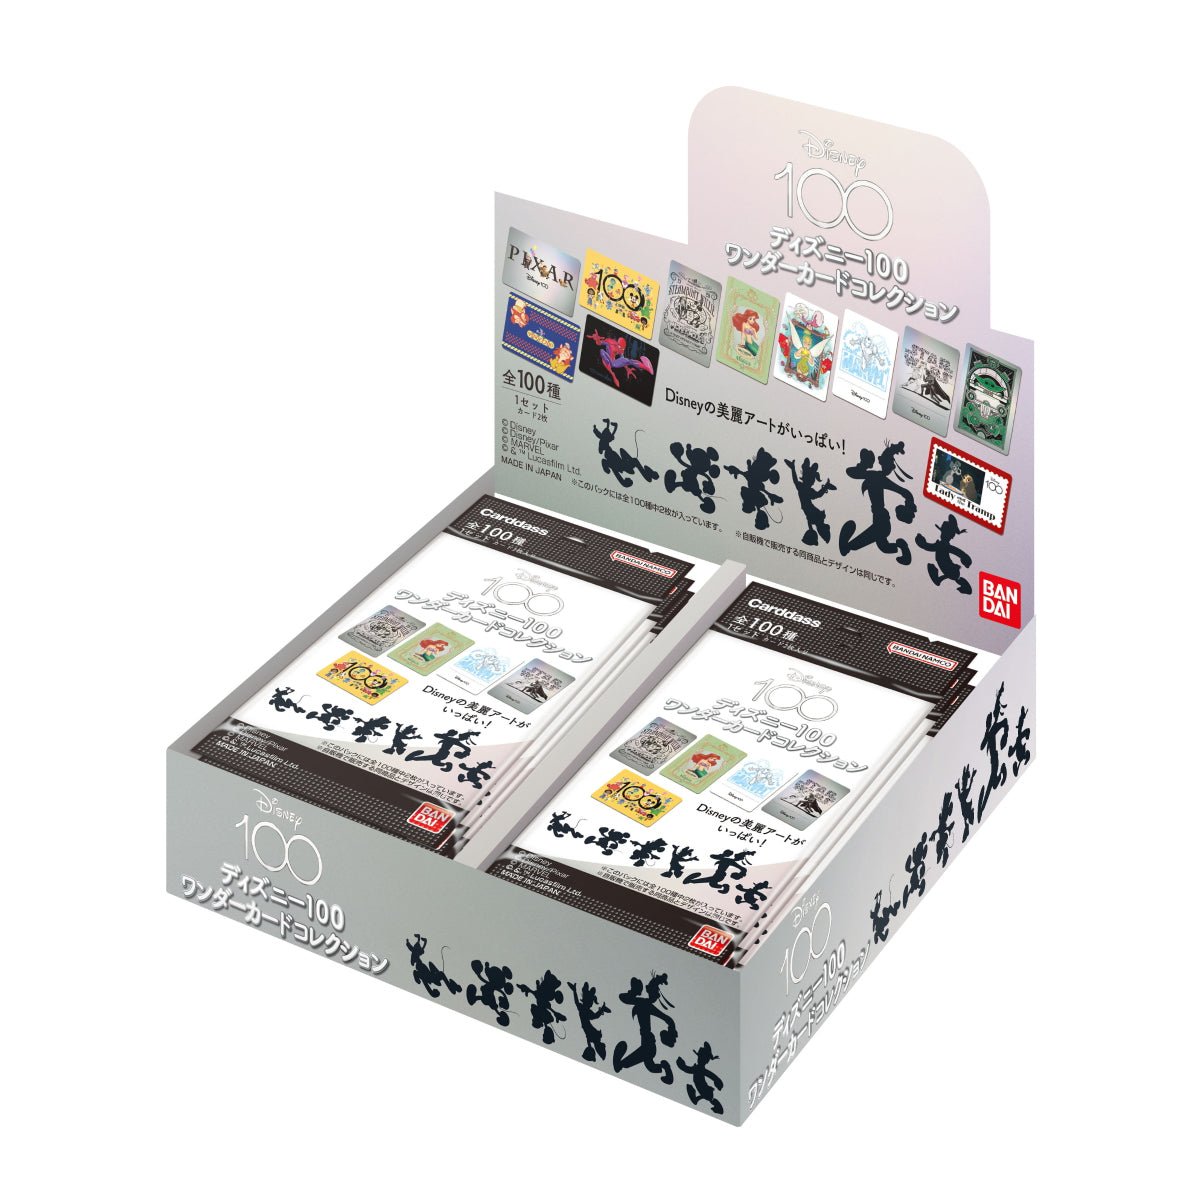 バンダイ ディズニー100 ワンダーカードコレクション BOX – SEPPLY